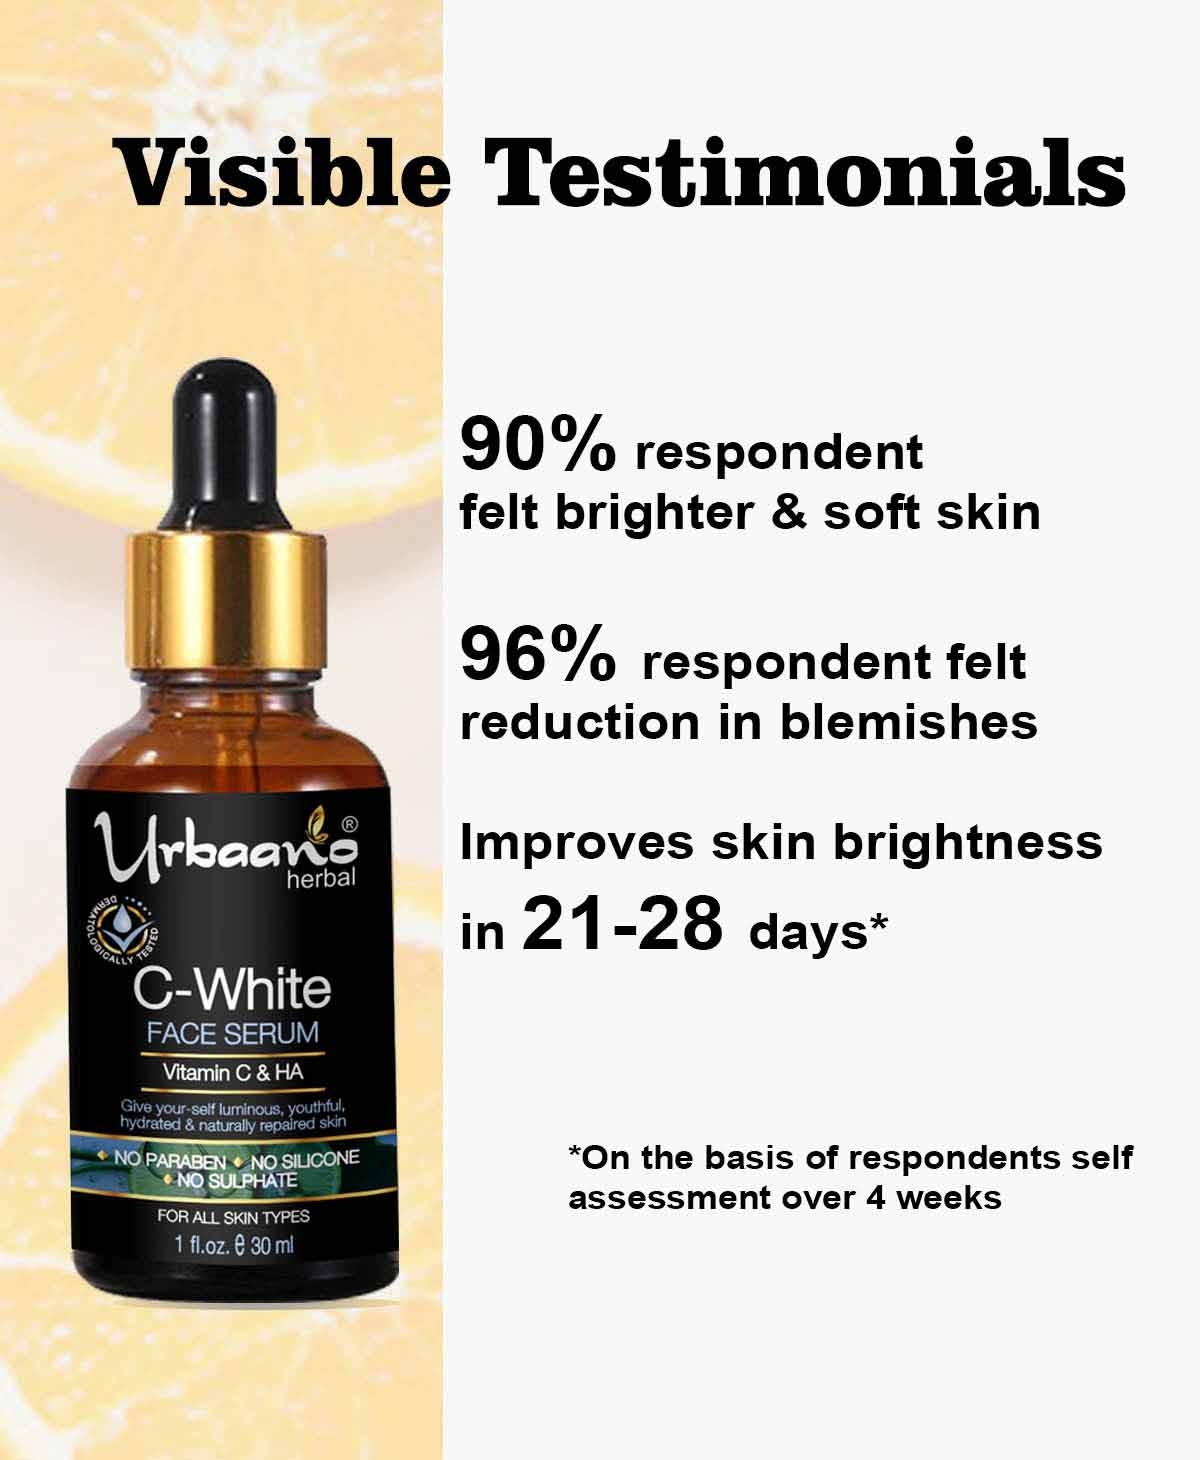 Urbaano Herbal | Urbaano Herbal Kumkumadi Skin Whitening & Brightening Cream & Vitamin C10, Hyaluronic Acid Face Serum 8